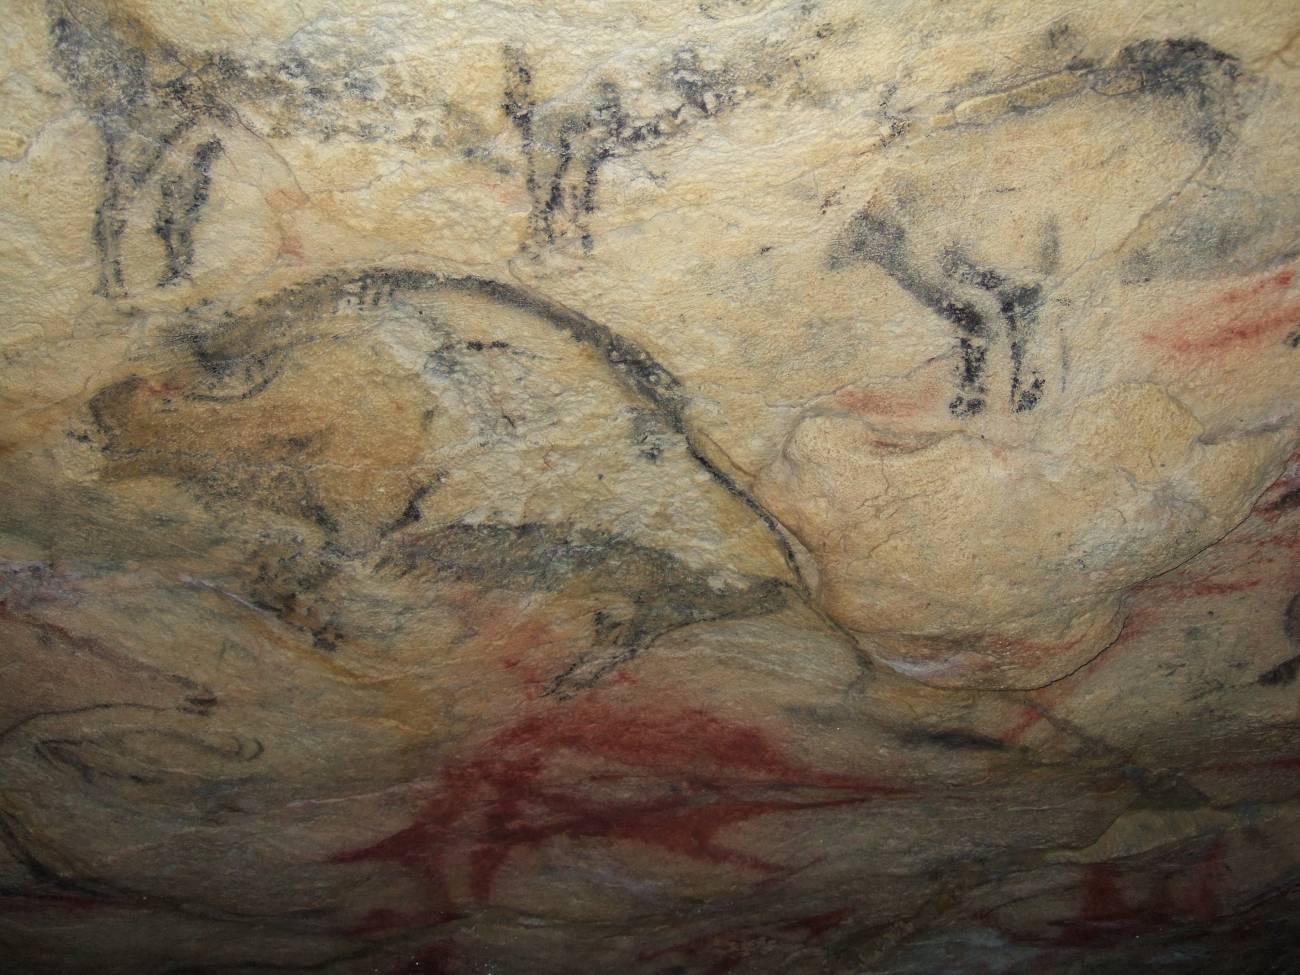 Pinturas rupestres de Atapuerca